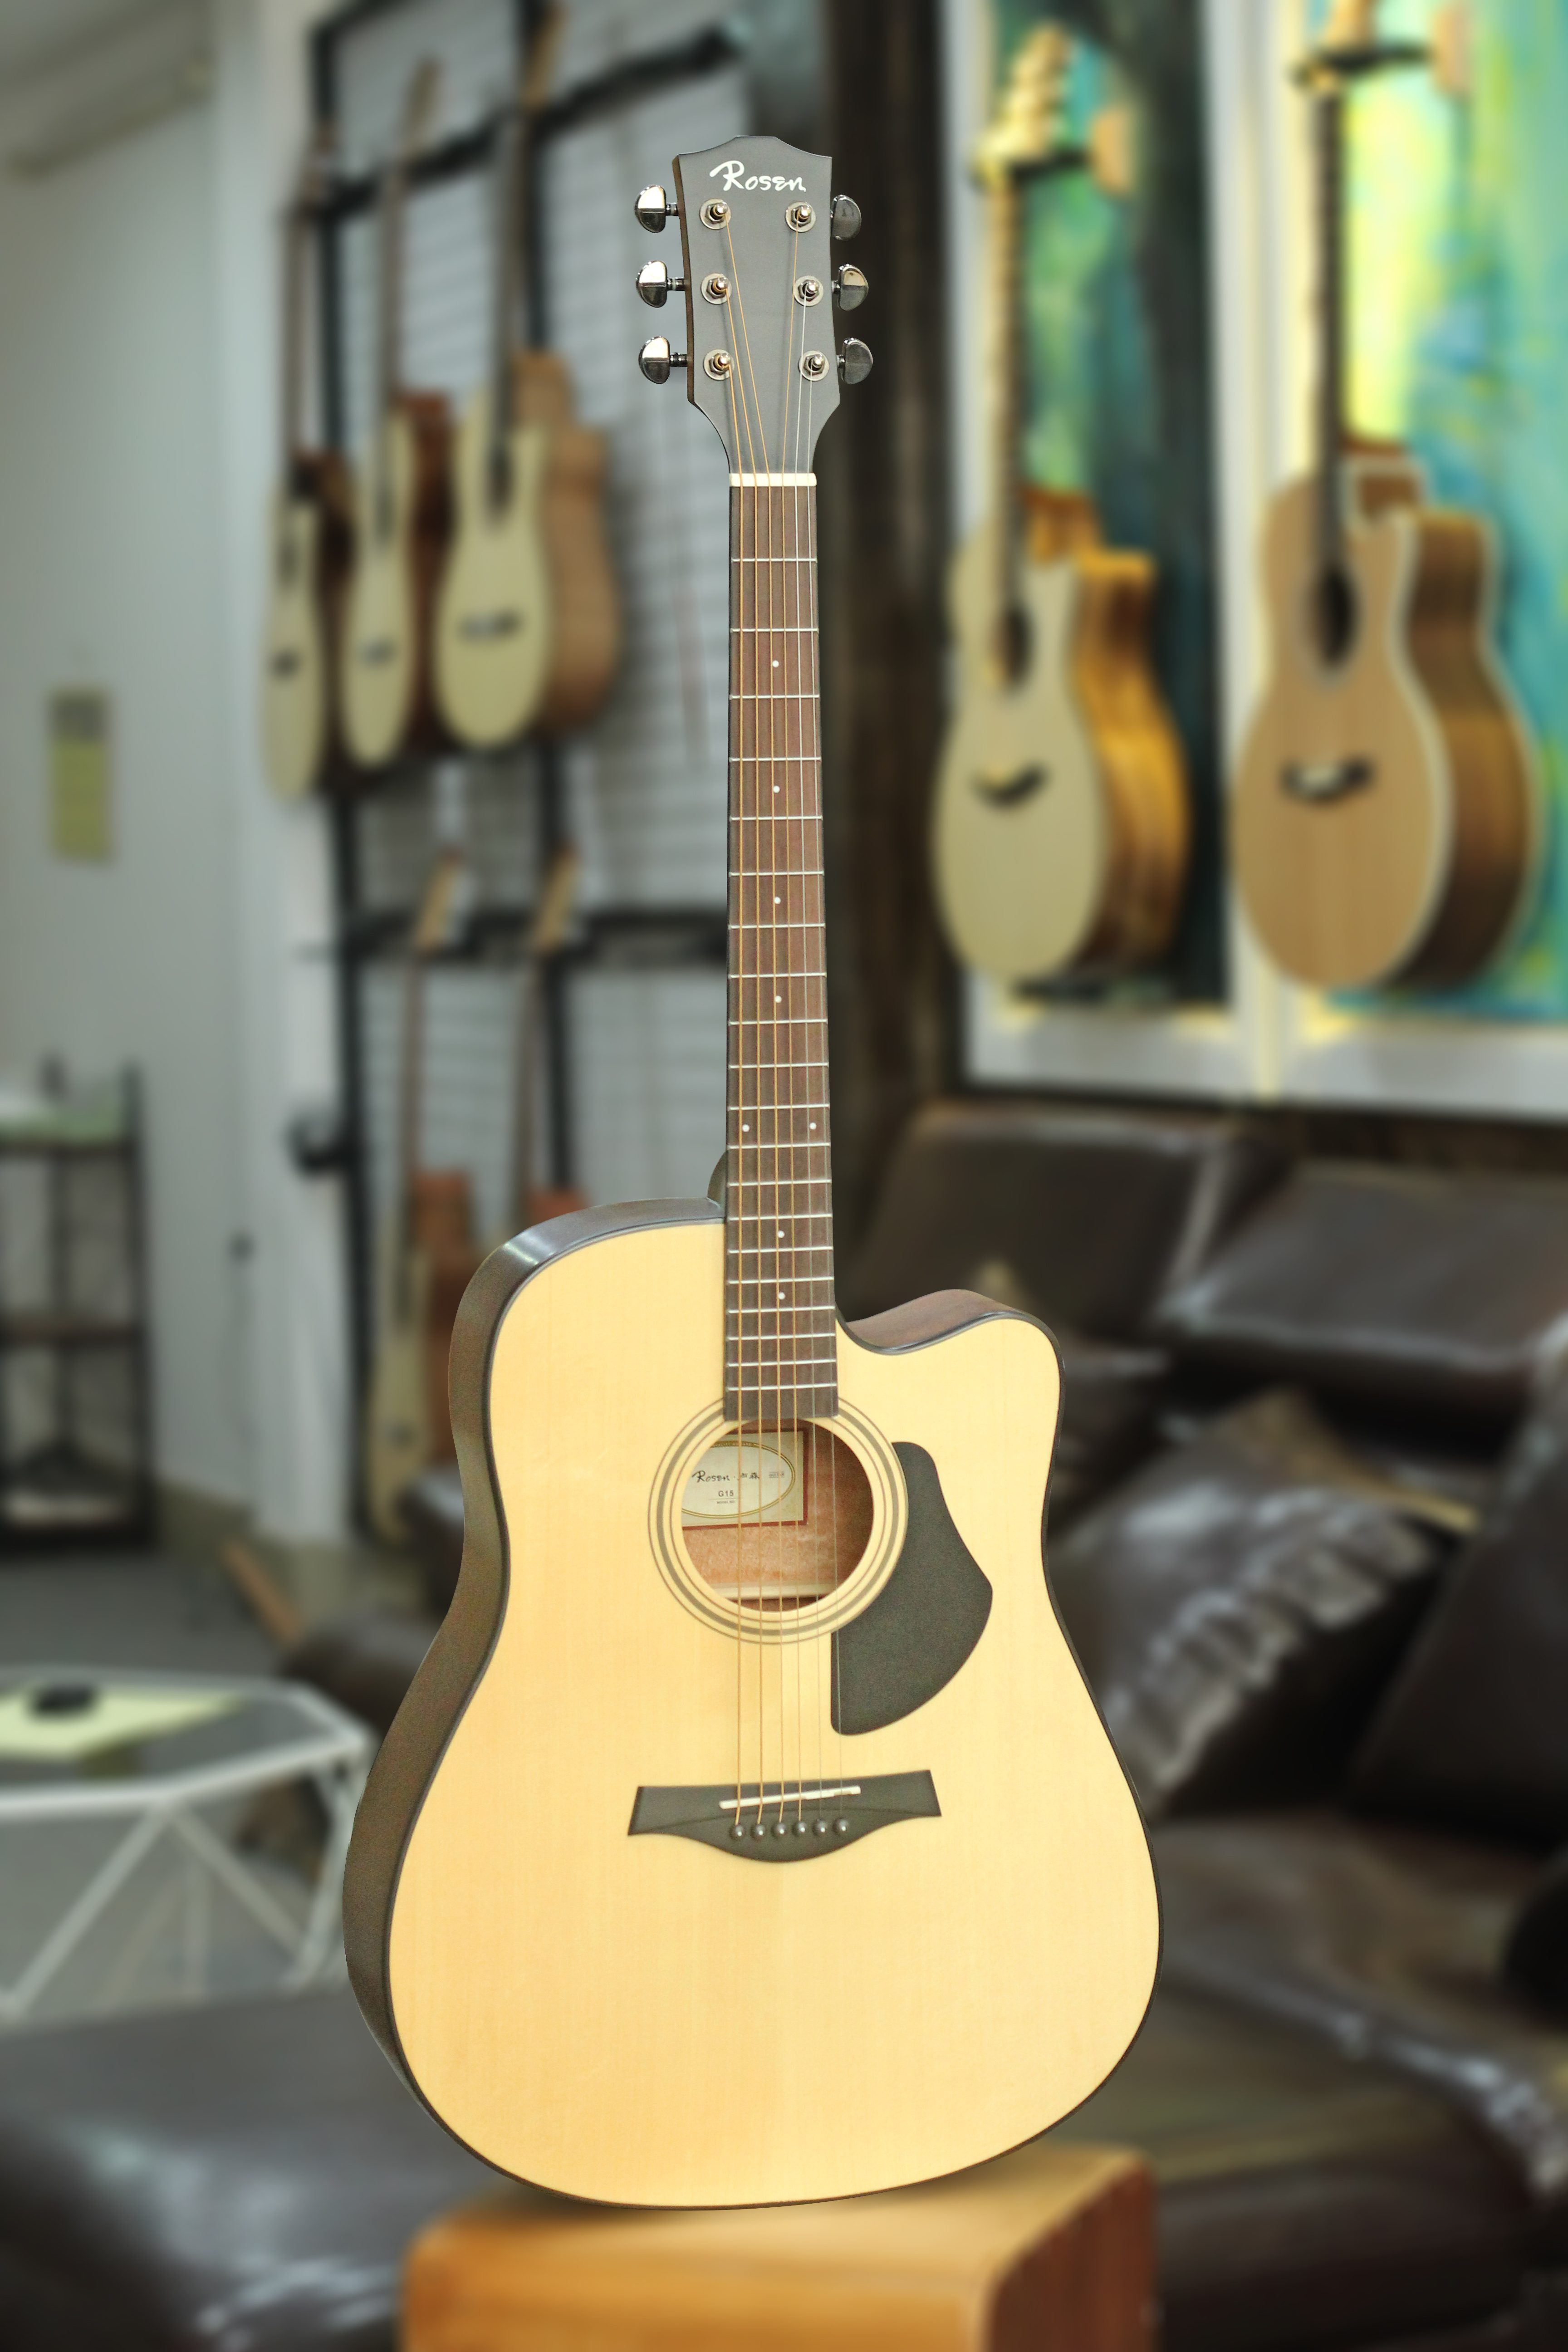 Đàn Guitar Acoustic Rosen Vàng G15 (Solid Top) - Màu Vàng, Size 41 , Âm Thanh Tốt